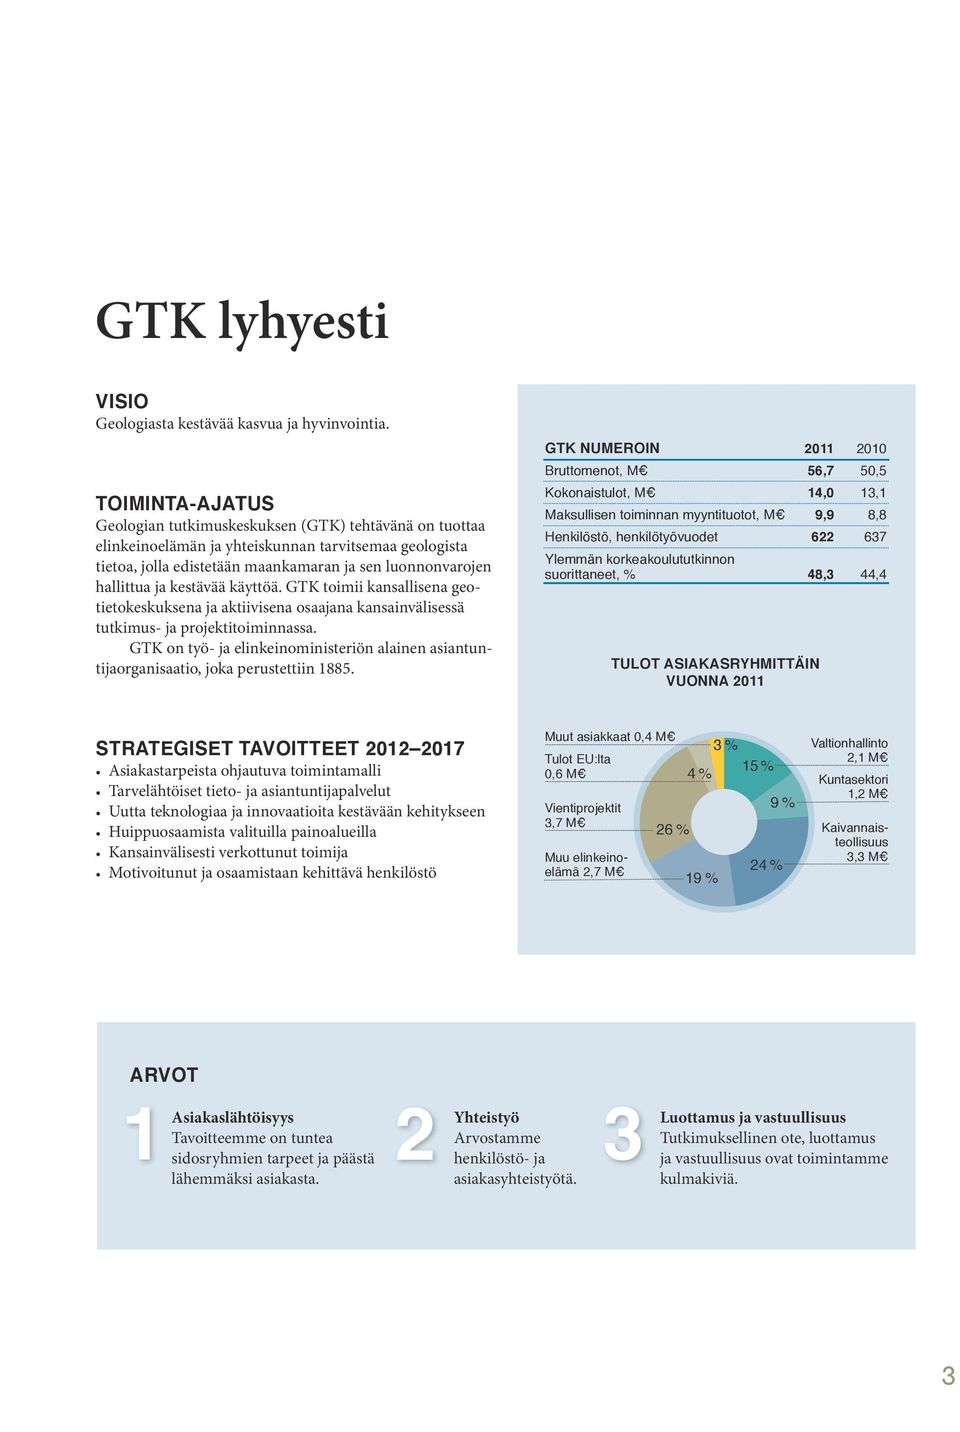 kestävää käyttöä. GTK toimii kansallisena geotietokeskuksena ja aktiivisena osaajana kansainvälisessä tutkimus- ja projektitoiminnassa.